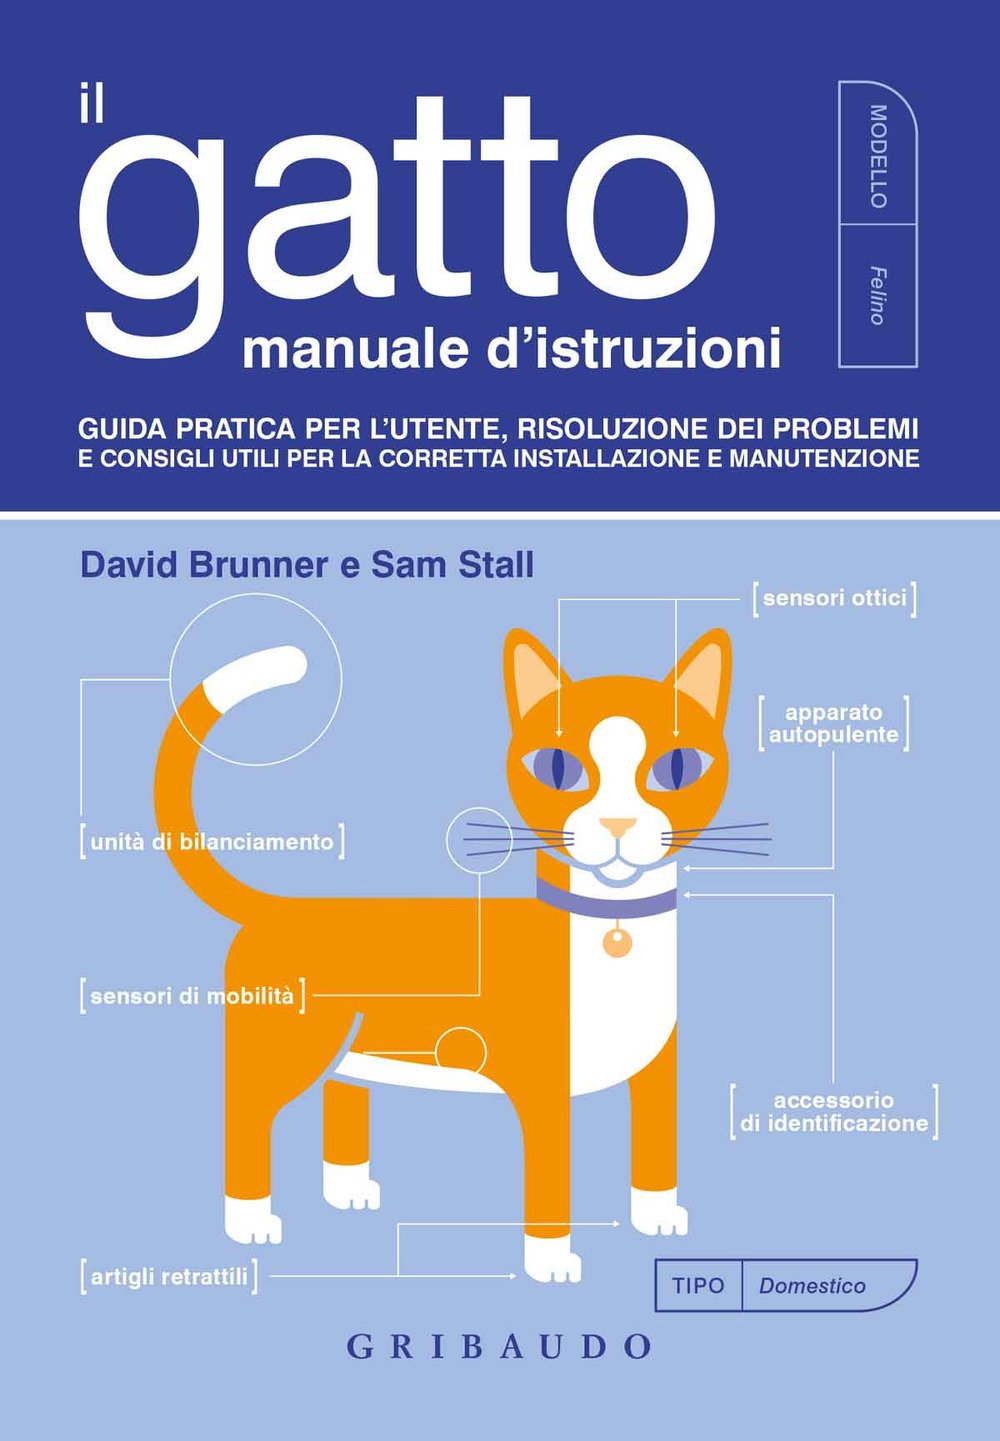 Il gatto, manuale d'istruzioni - David Brunner, Sam Stall